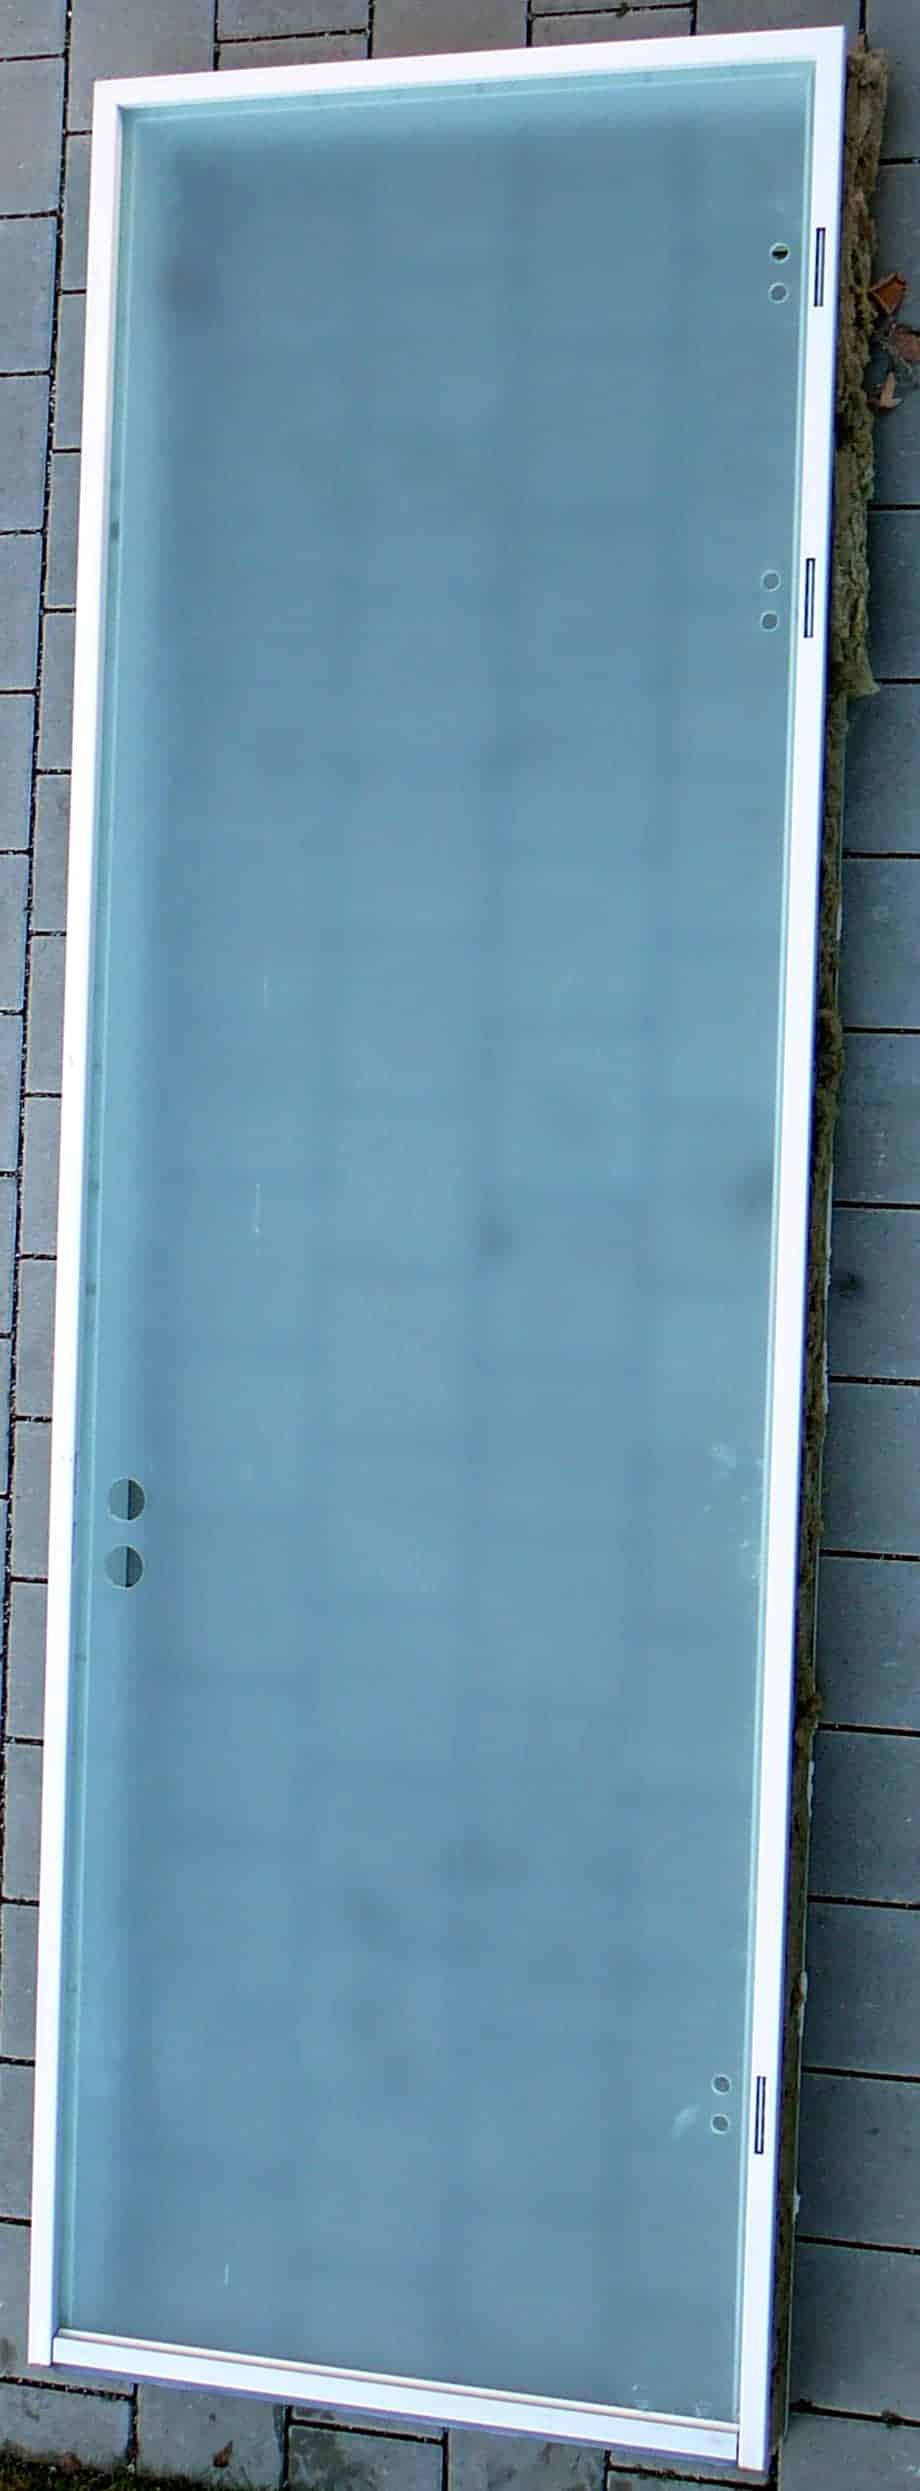 Ganzglastürblatt, ESG 10 mm, satiniert mit Bodendichtung & Stahlzarge, 0,885 x 2,75 m